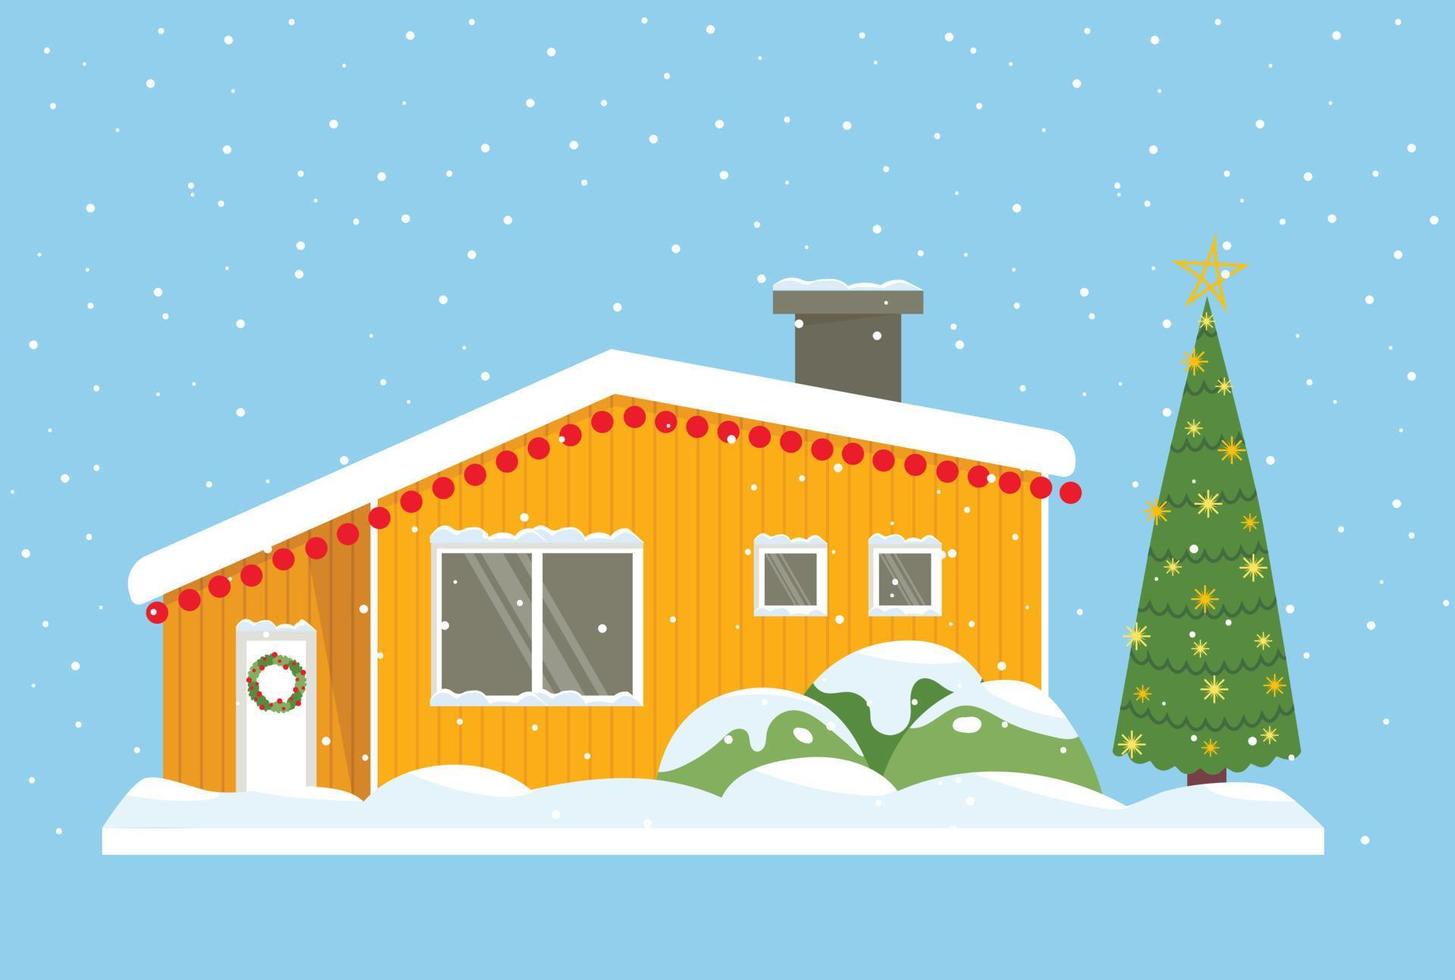 orangefarbenes Haus. Heimat von Grönland, Island, Nordpol, Holland. schneebedecktes Dach und Fenster, Silvester außen. Weihnachtsbaum im Hof vektor